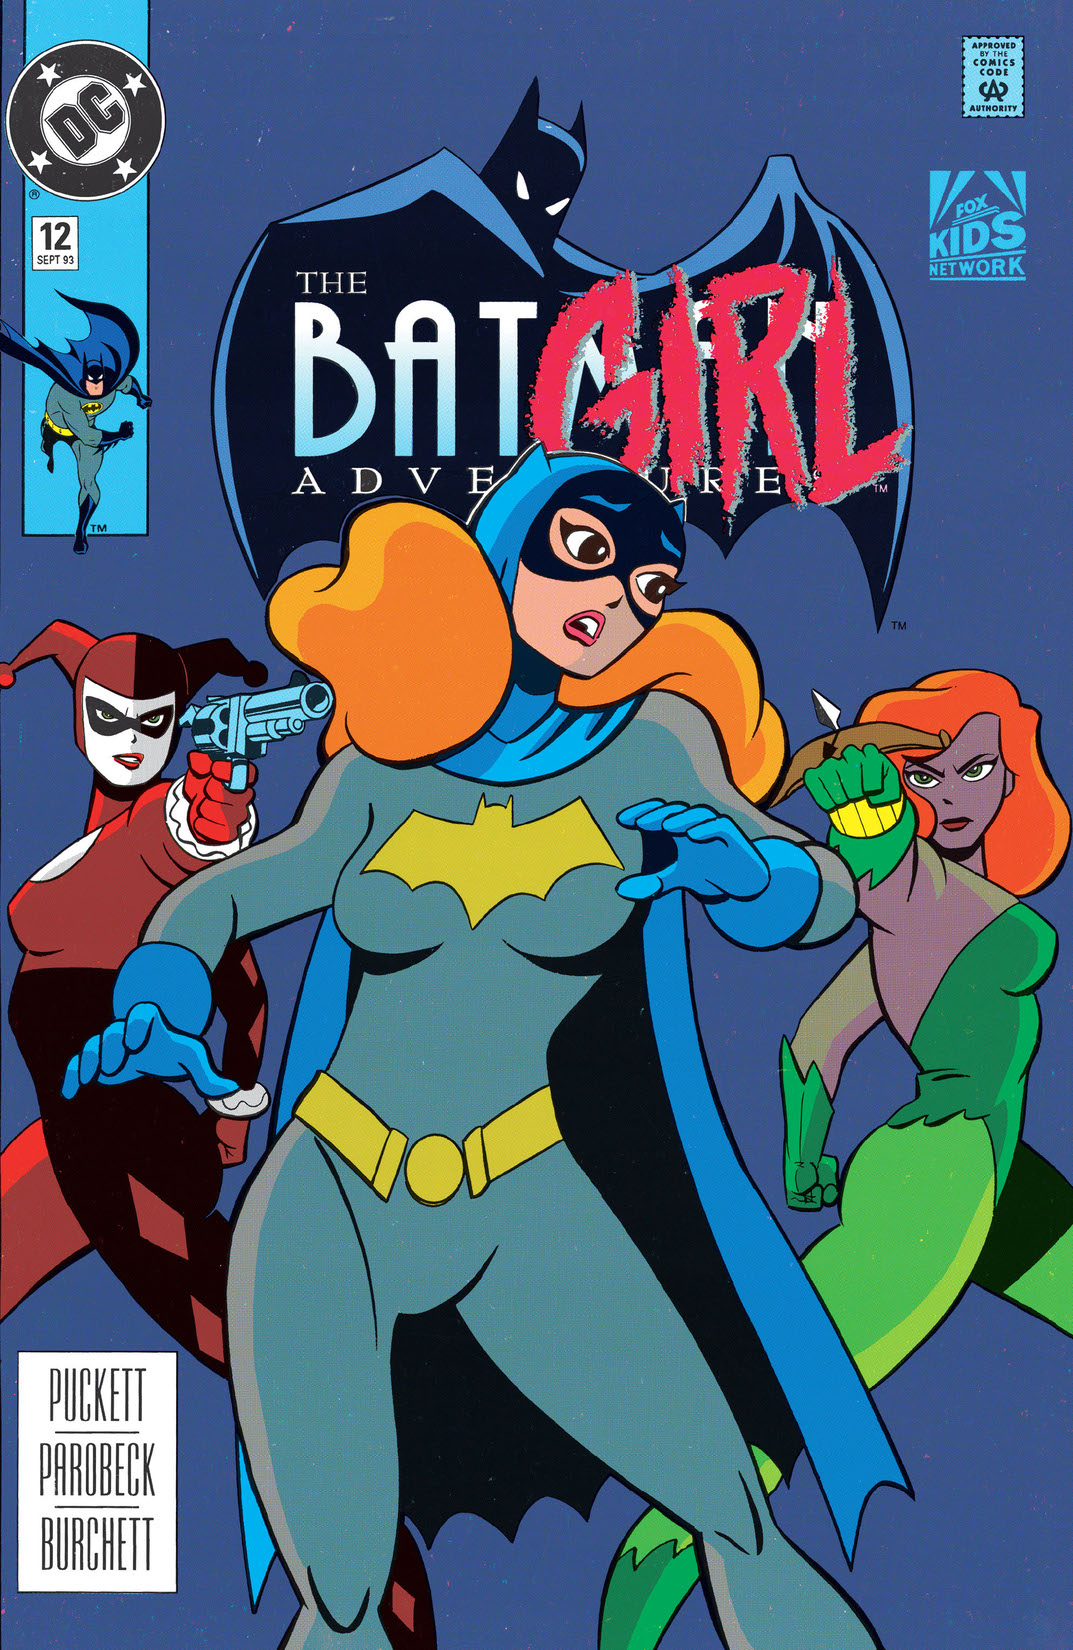 The Batman Adventures #12 preview images